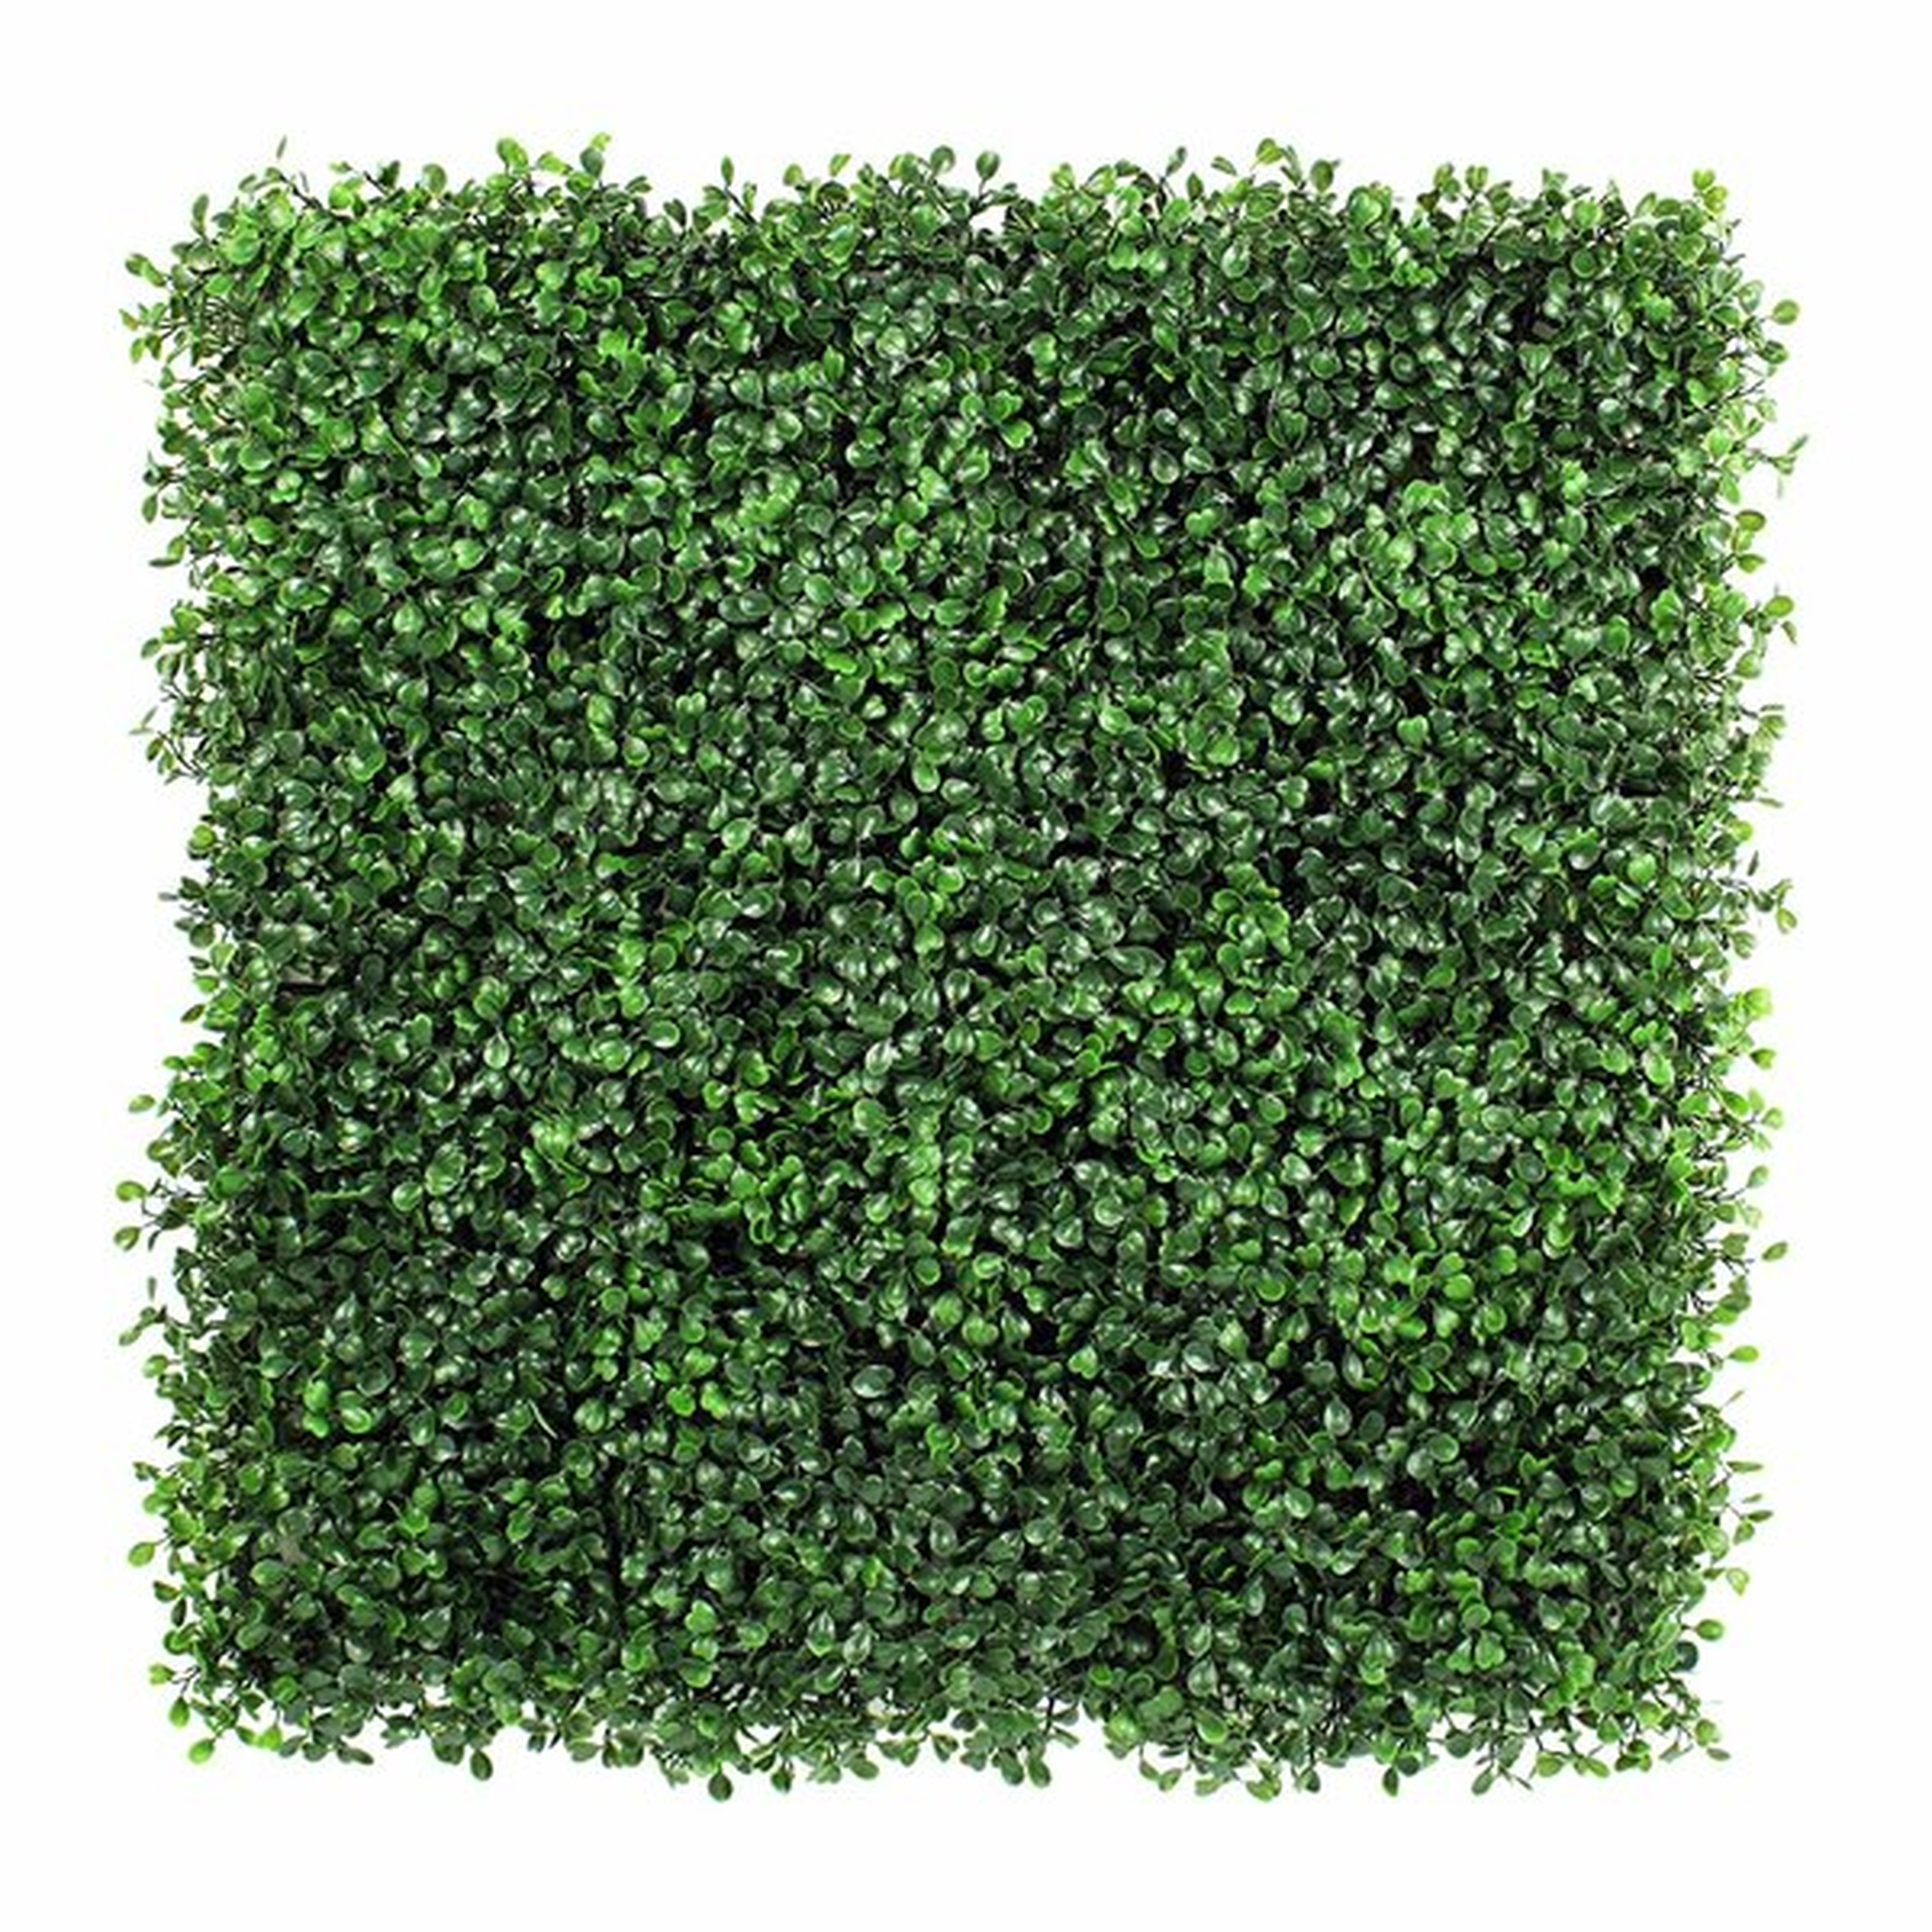 Grass wall panel - Wayfair